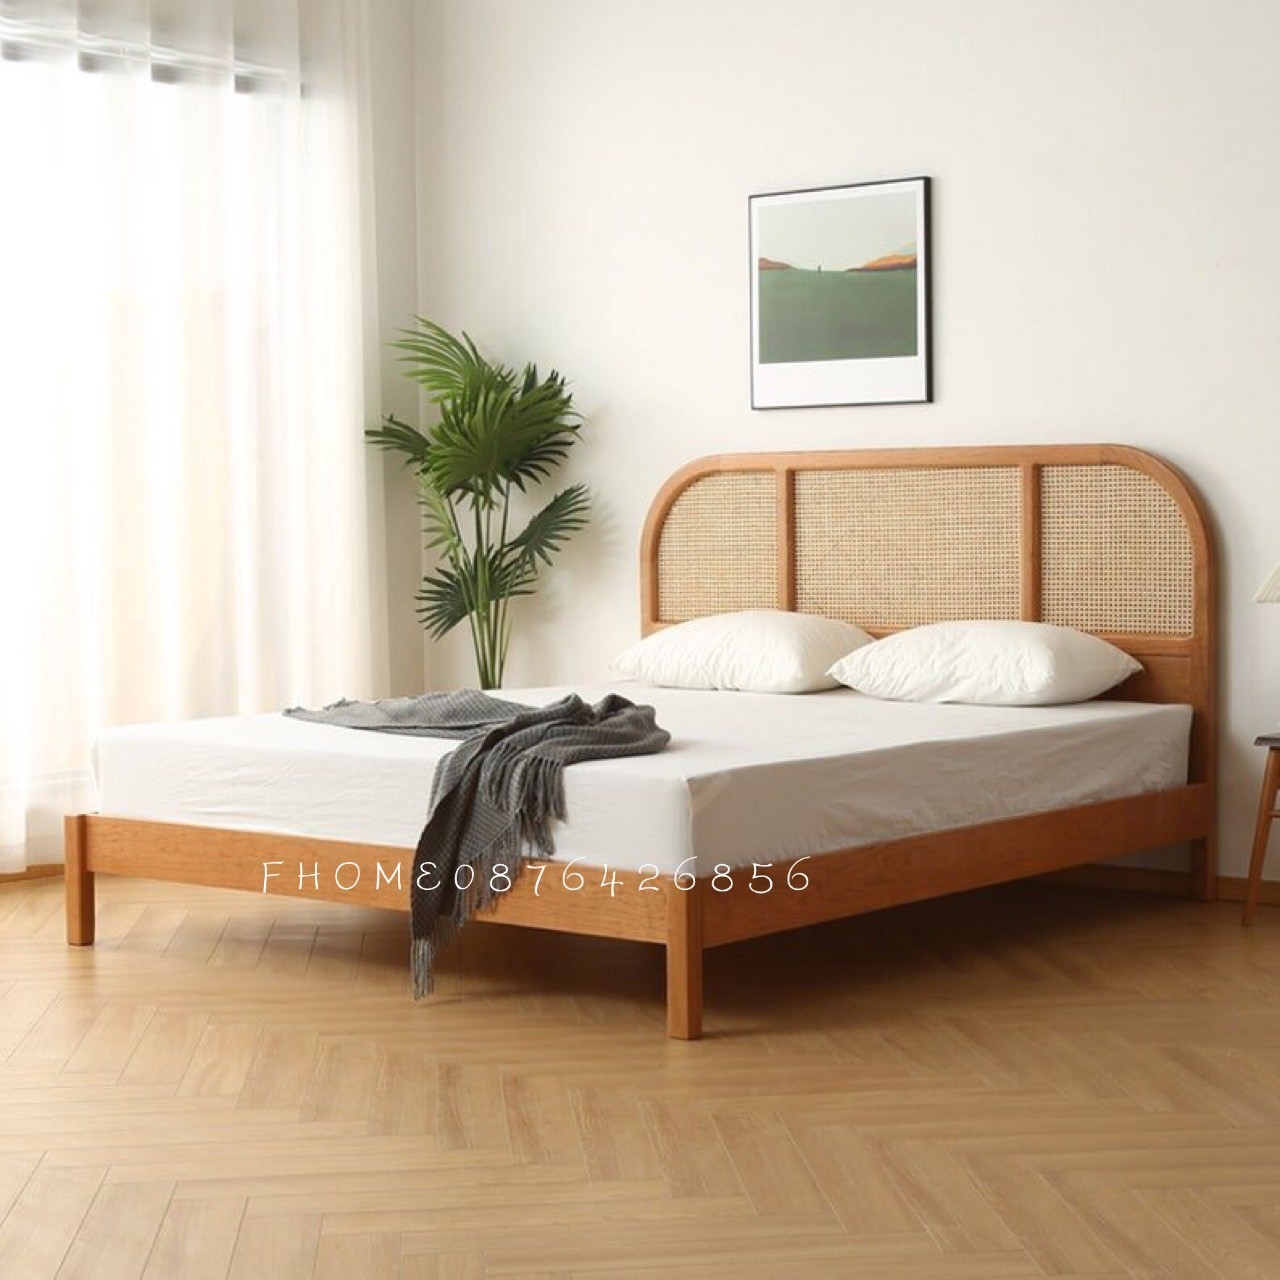 Mẫu giường ngủ với màu sắc tươi sáng mang lại không gian ấm cúng cho gia đình bạn